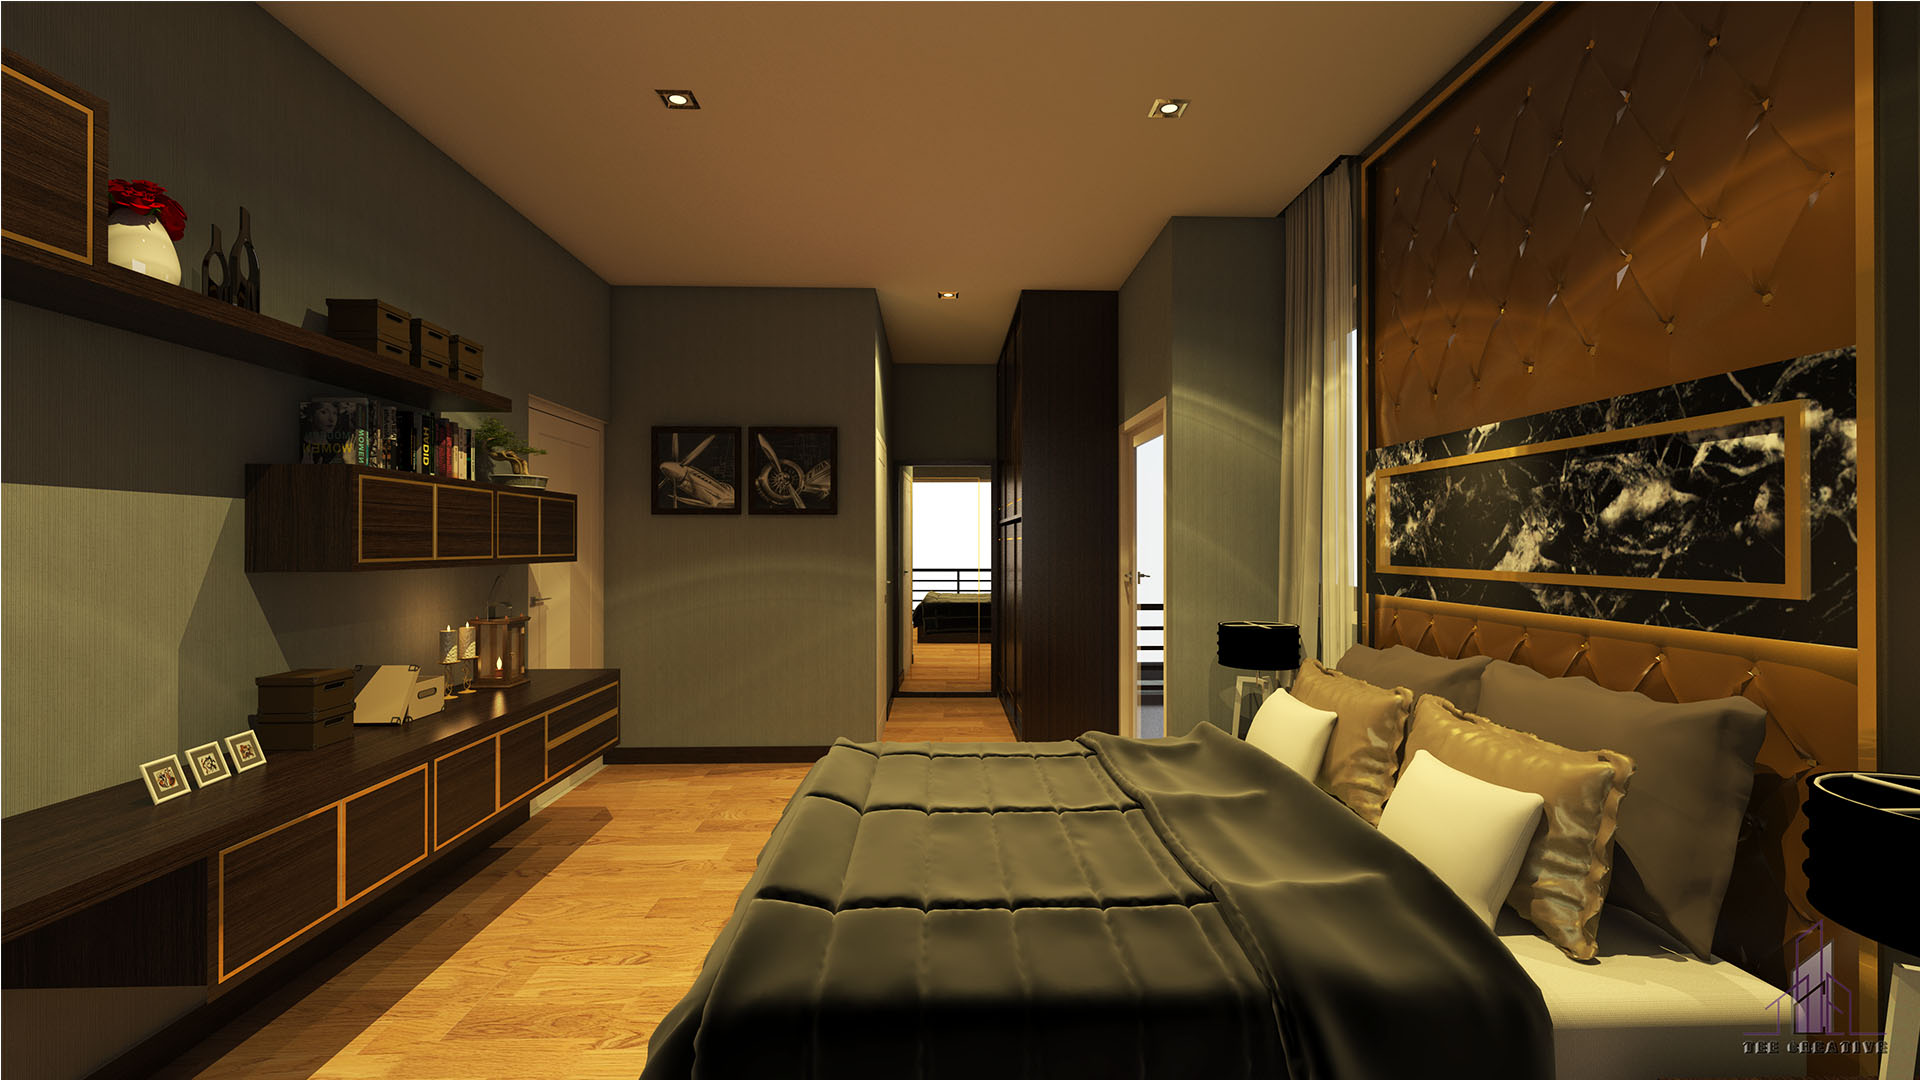 Home Design Master Bedroom 2